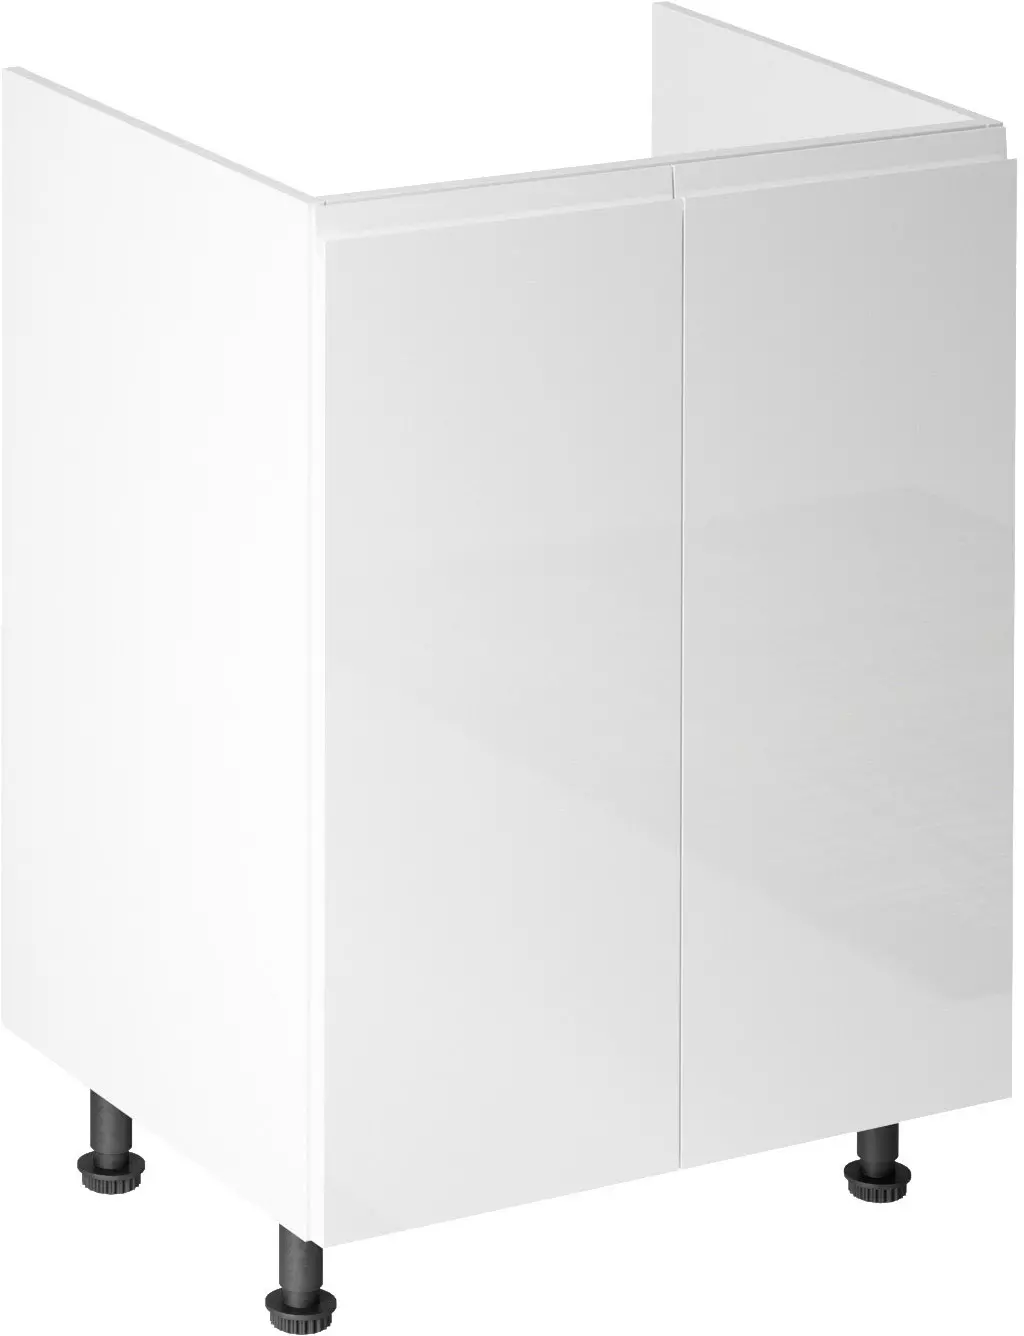 Aspen D60Z alsó konyhaszekrény, fehér